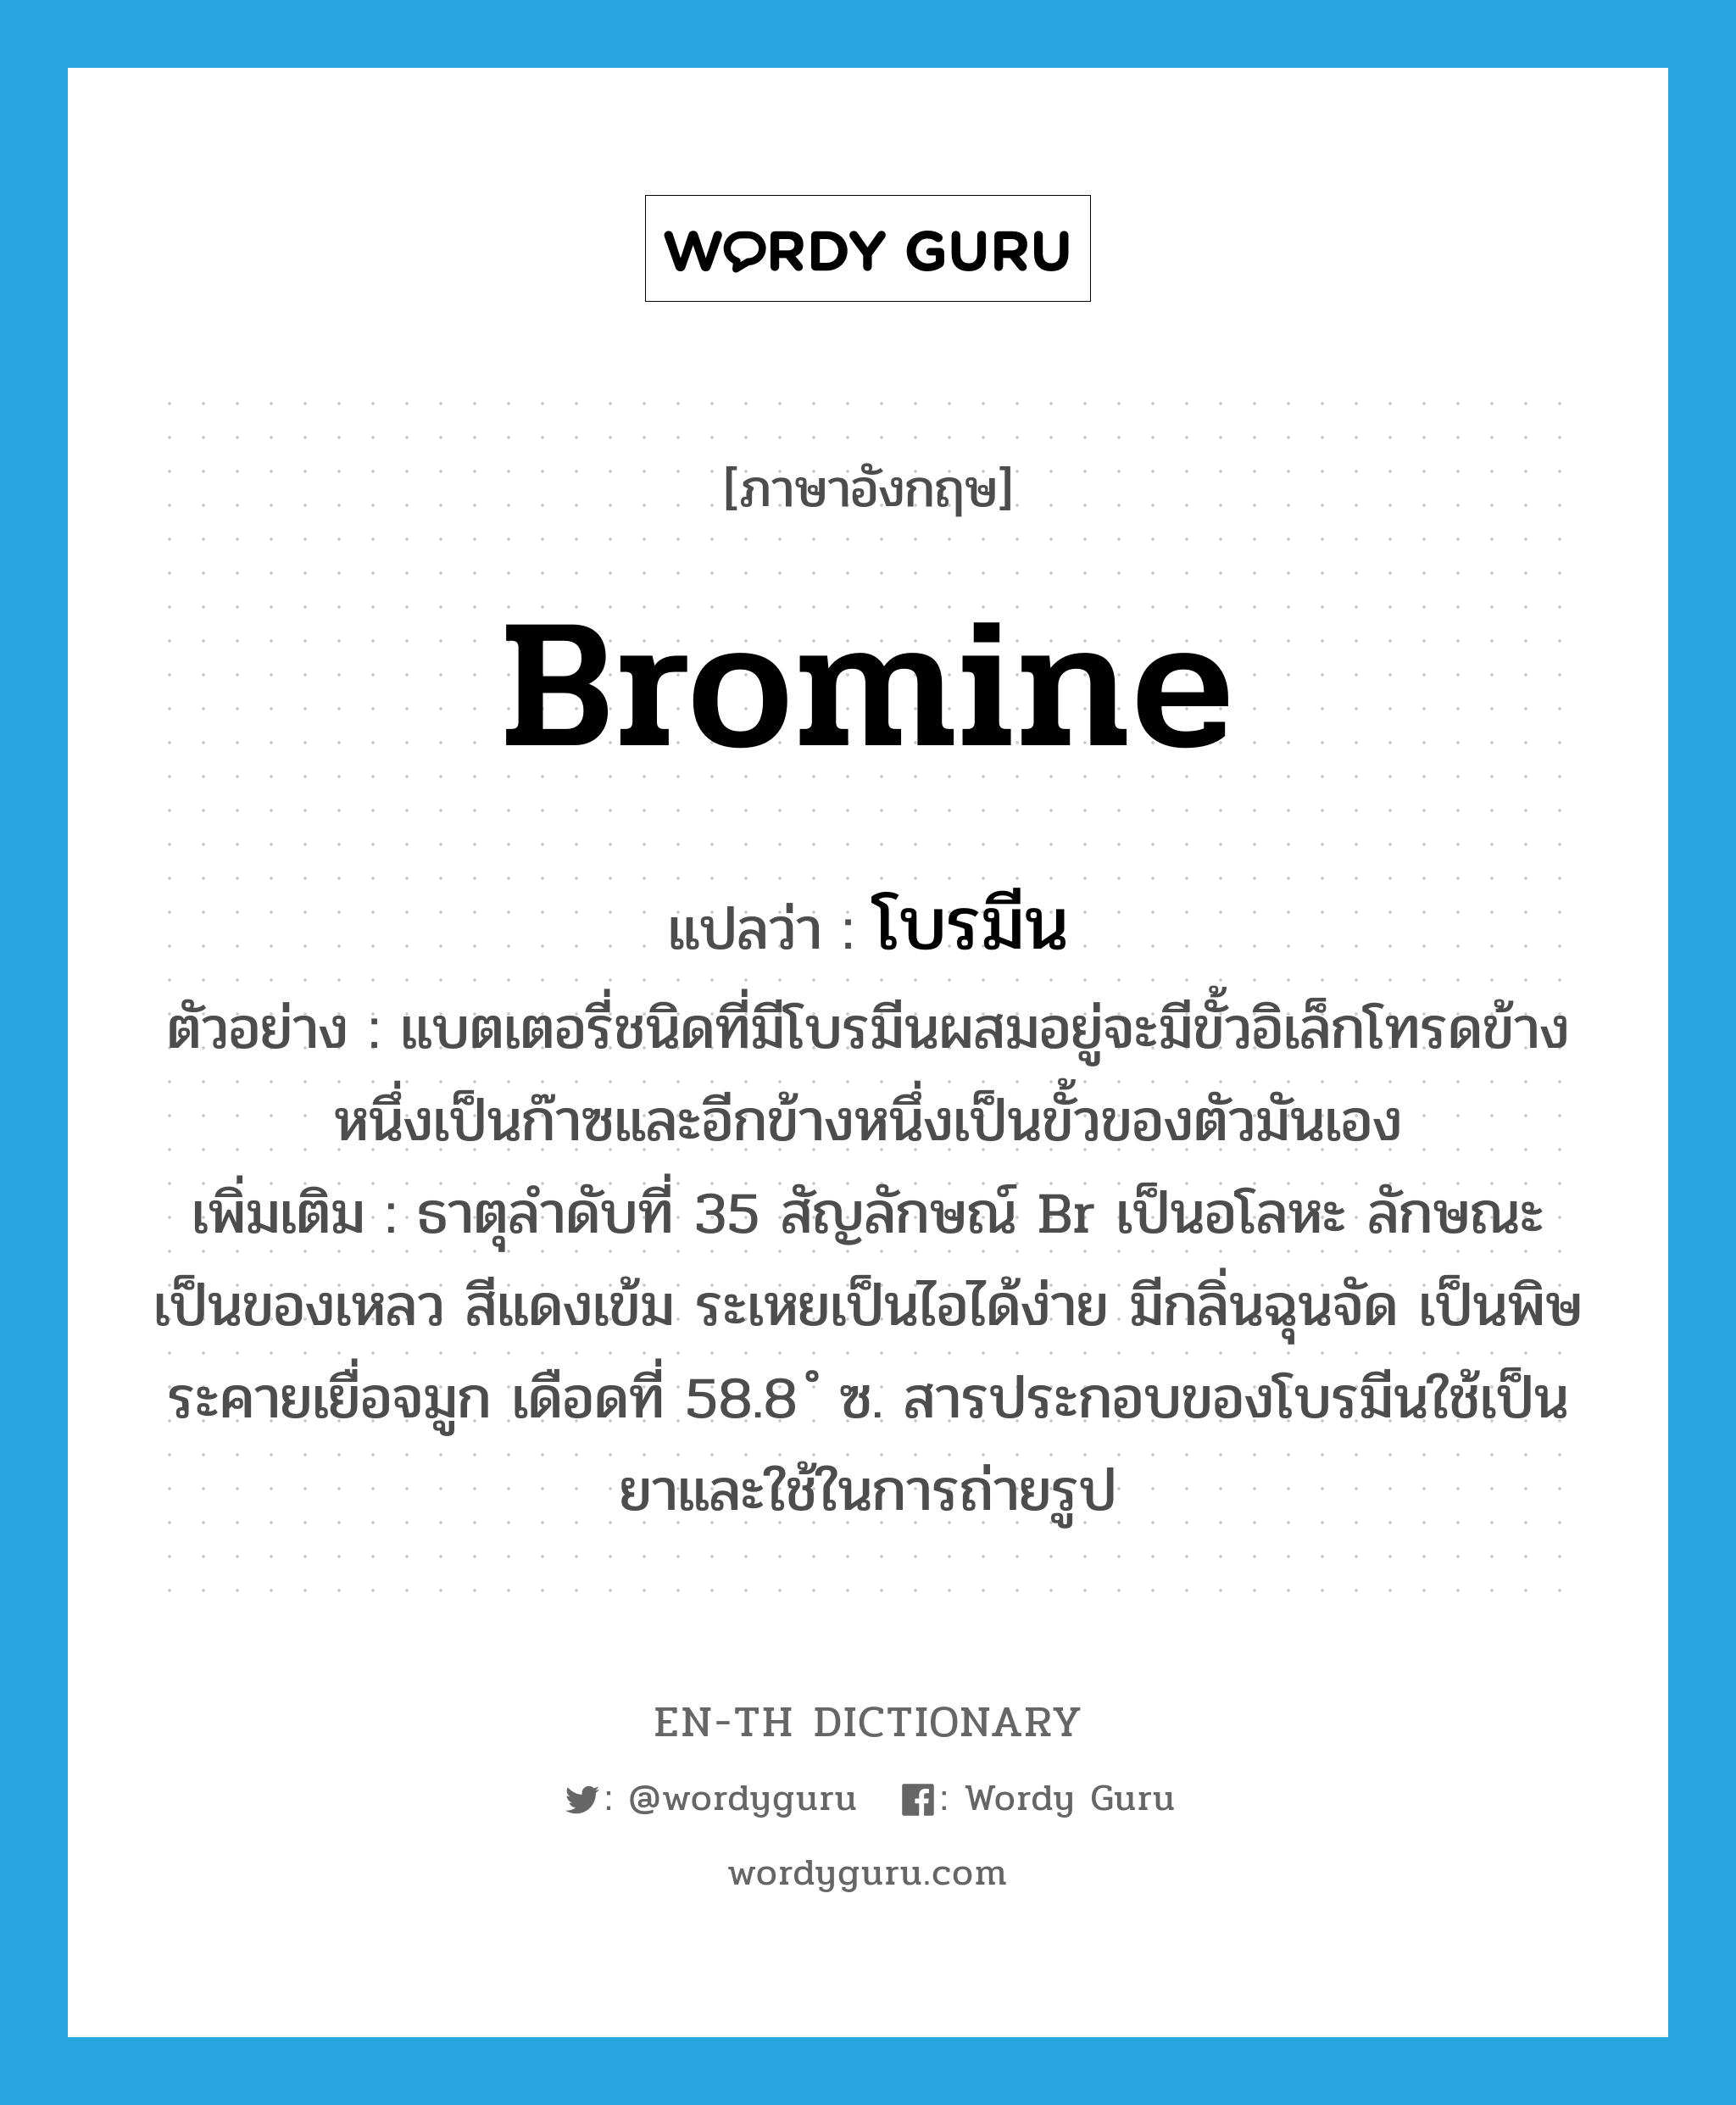 bromine แปลว่า?, คำศัพท์ภาษาอังกฤษ bromine แปลว่า โบรมีน ประเภท N ตัวอย่าง แบตเตอรี่ชนิดที่มีโบรมีนผสมอยู่จะมีขั้วอิเล็กโทรดข้างหนึ่งเป็นก๊าซและอีกข้างหนึ่งเป็นขั้วของตัวมันเอง เพิ่มเติม ธาตุลำดับที่ 35 สัญลักษณ์ Br เป็นอโลหะ ลักษณะเป็นของเหลว สีแดงเข้ม ระเหยเป็นไอได้ง่าย มีกลิ่นฉุนจัด เป็นพิษ ระคายเยื่อจมูก เดือดที่ 58.8 ํ ซ. สารประกอบของโบรมีนใช้เป็นยาและใช้ในการถ่ายรูป หมวด N